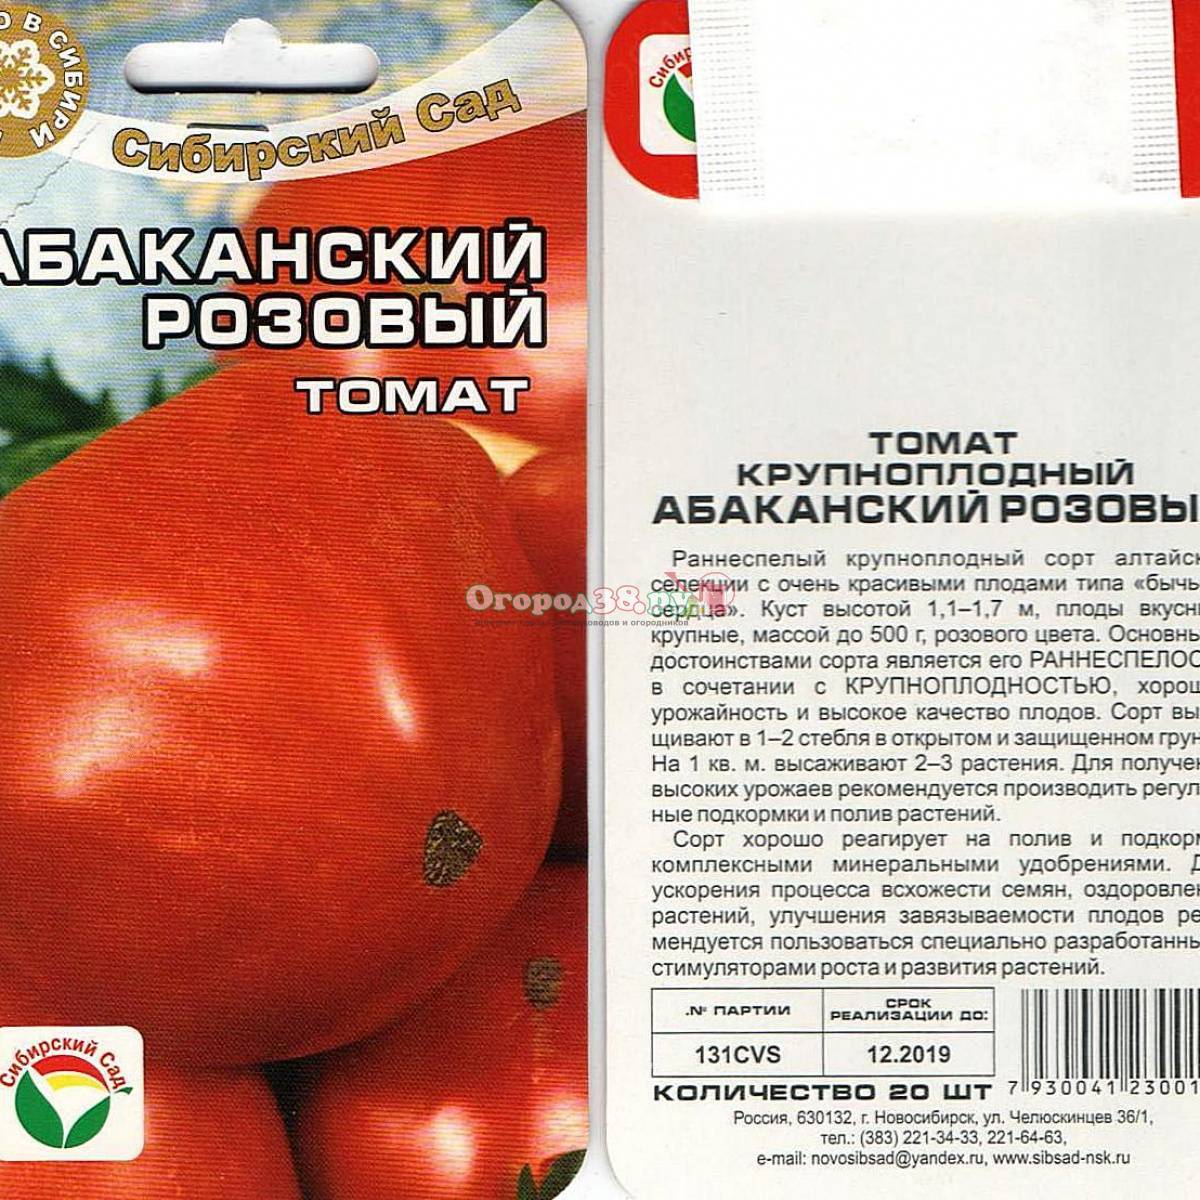 Описание штамбовых сортов томата: их особенности и фото